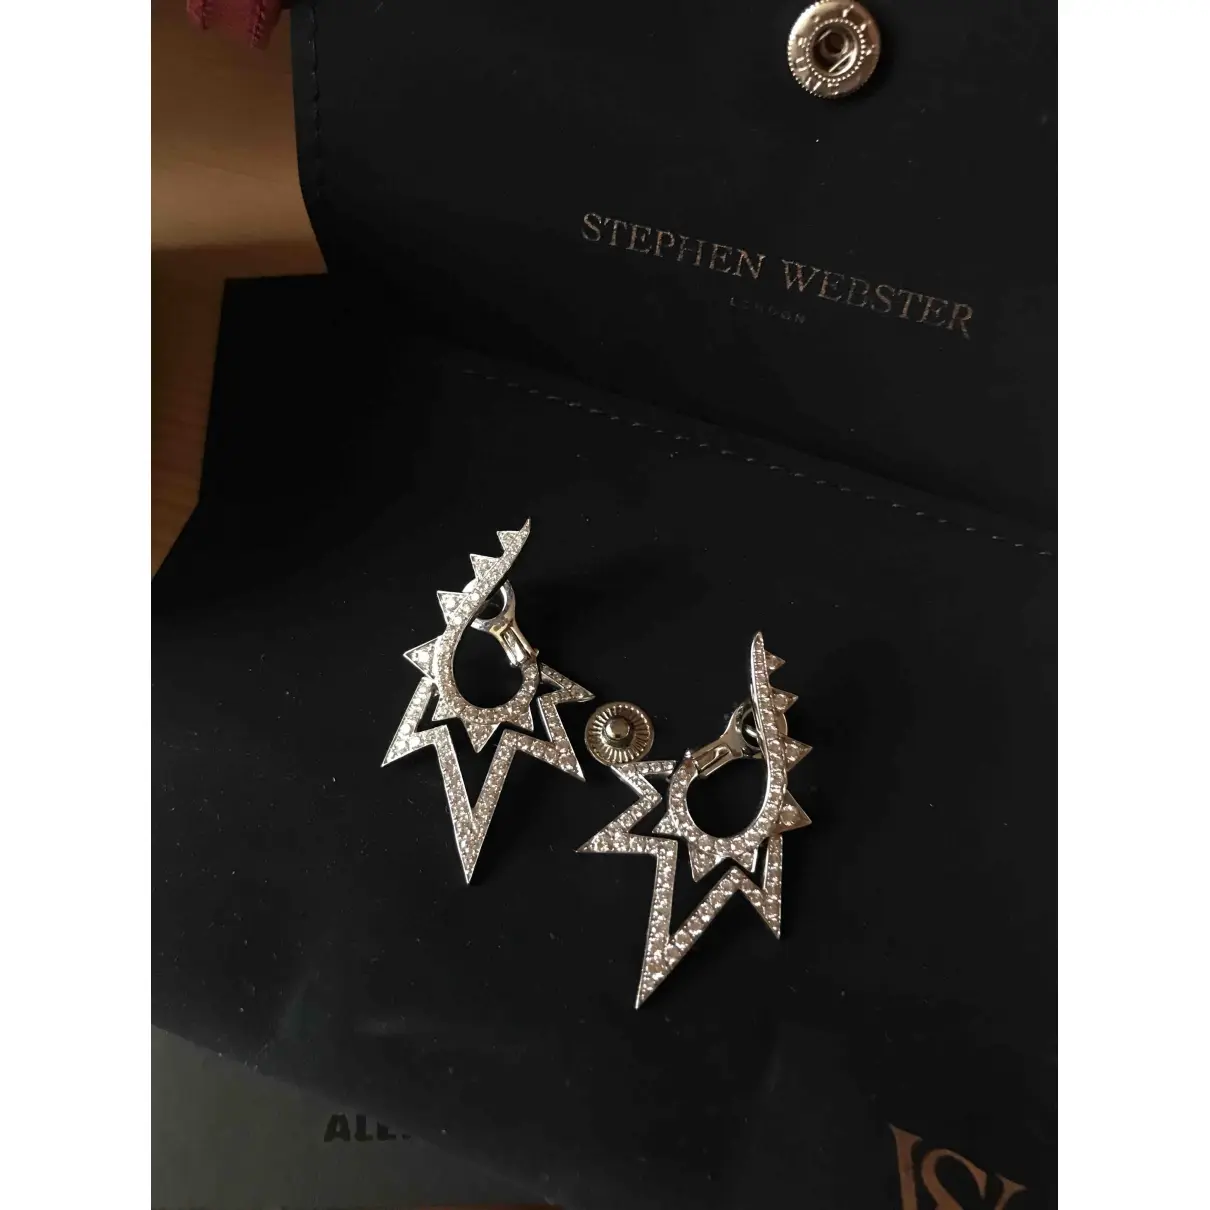 Buy Stephen Webster White gold earrings online